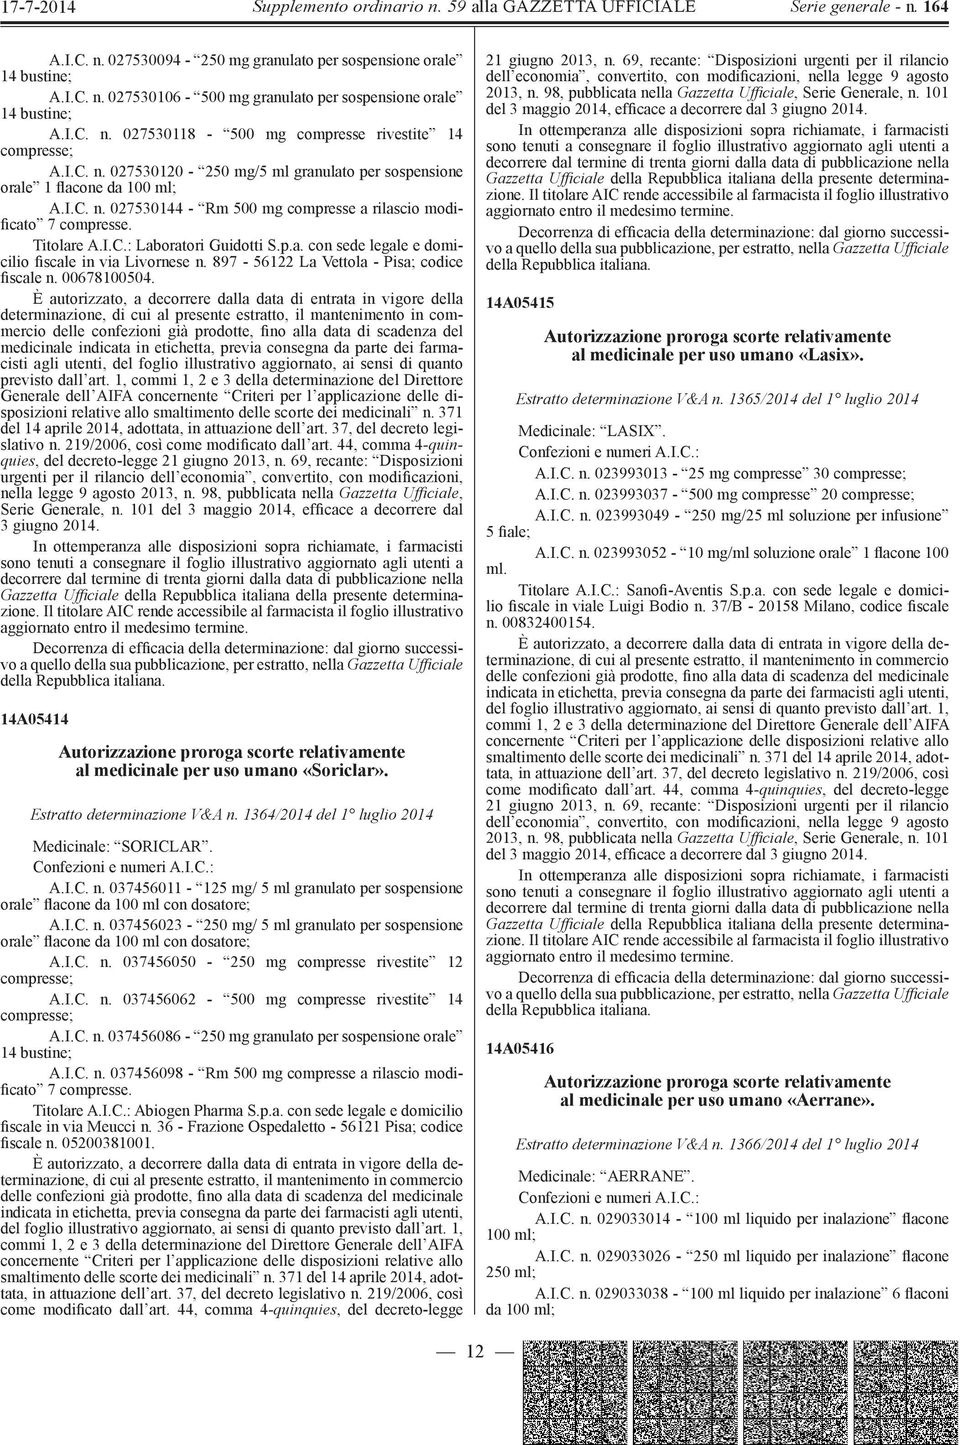 p.a. con sede legale e domicilio fiscale in via Livornese n. 897-56122 La Vettola - Pisa; codice fiscale n. 00678100504.